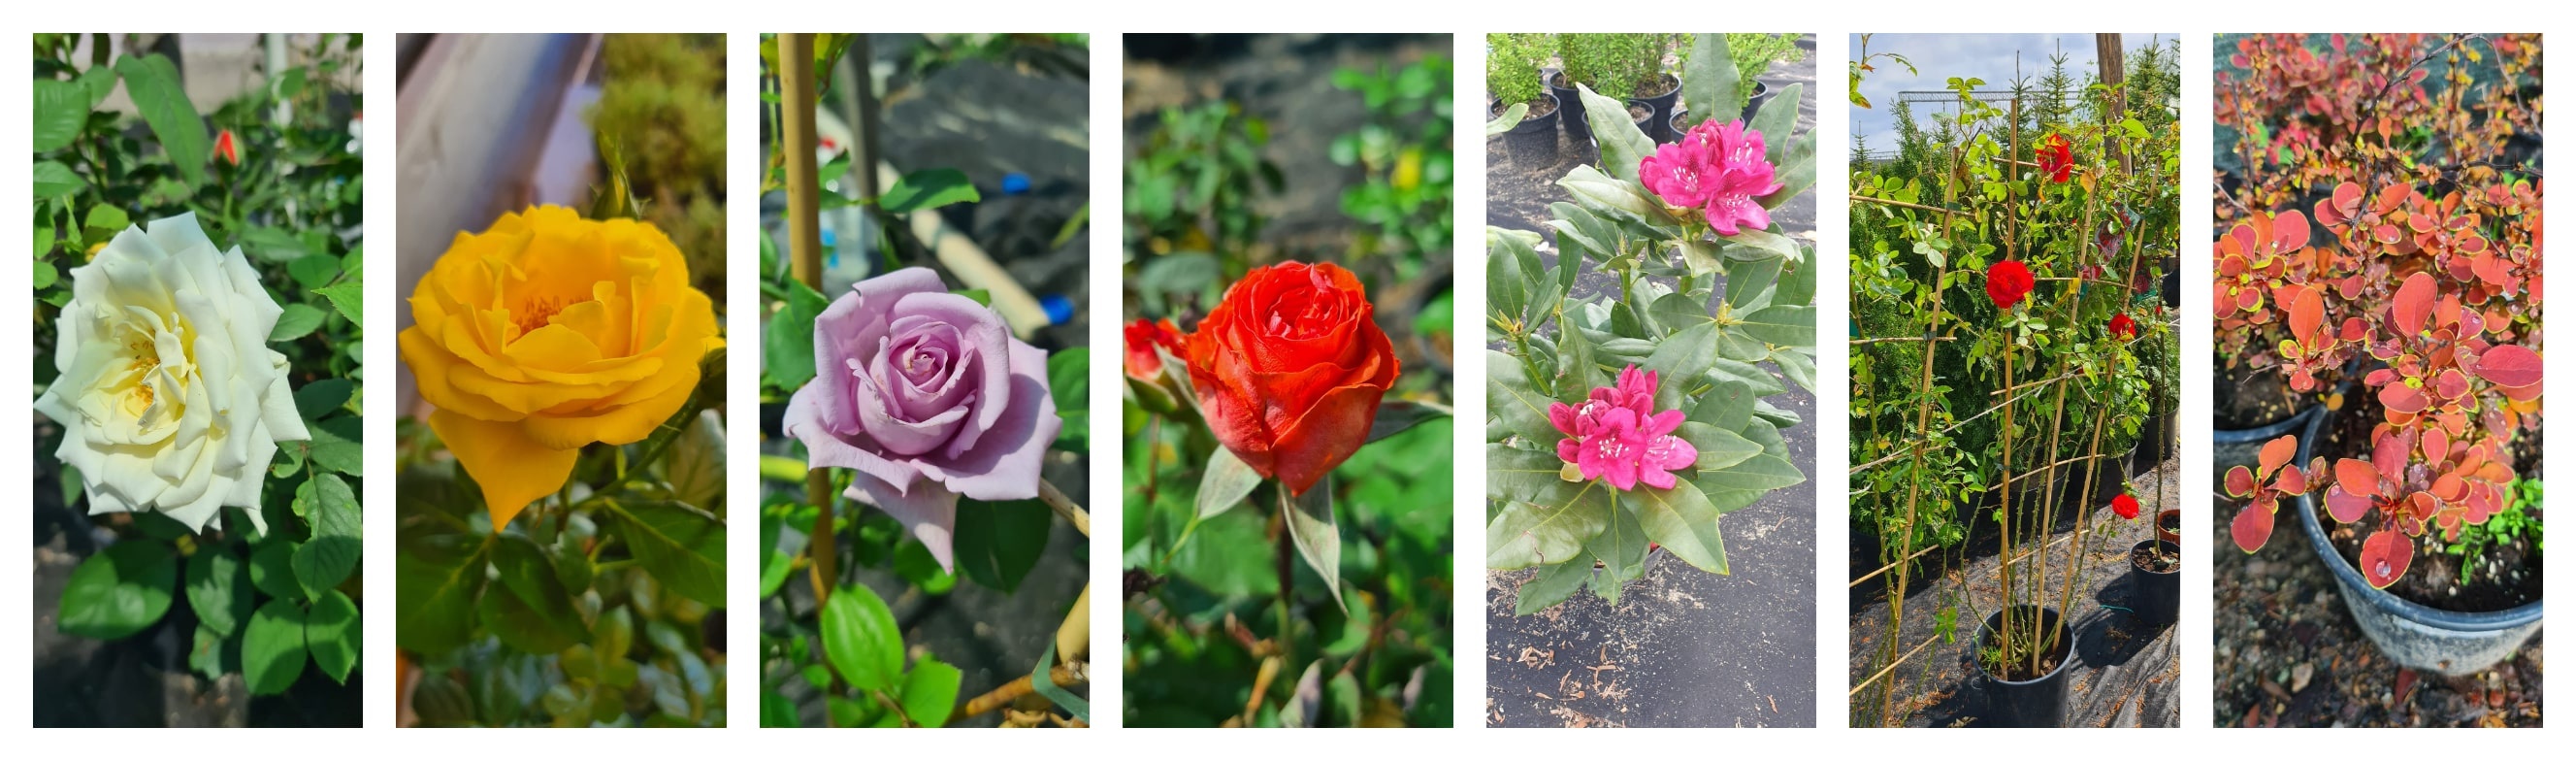 trandafiri-plante-gradina-dej